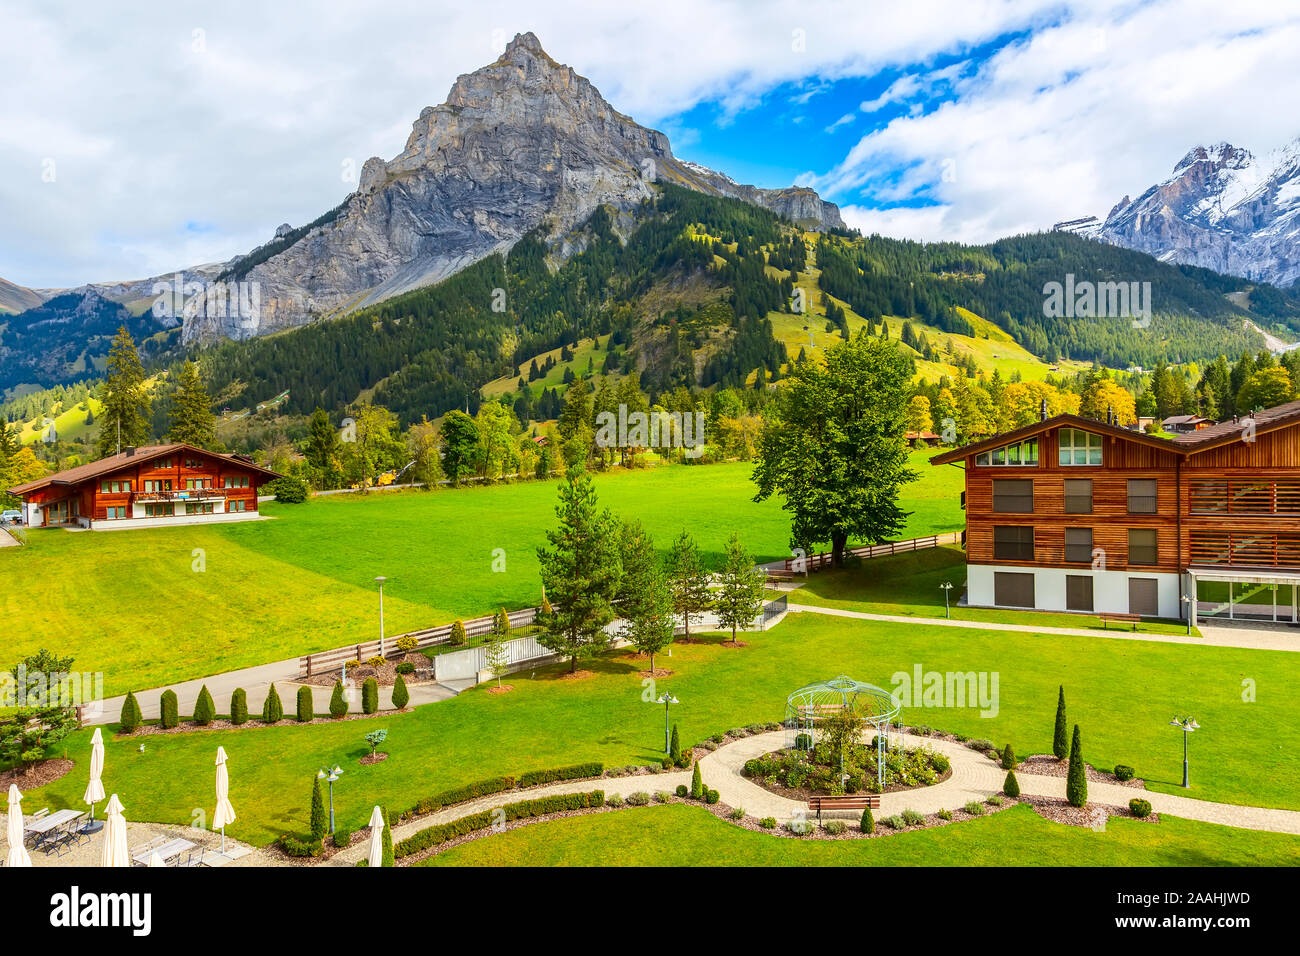 Chalet in Kandersteg Dorf, Kanton Bern, Schweiz, Europa, Herbst Bäume und Berge Panorama Stockfoto